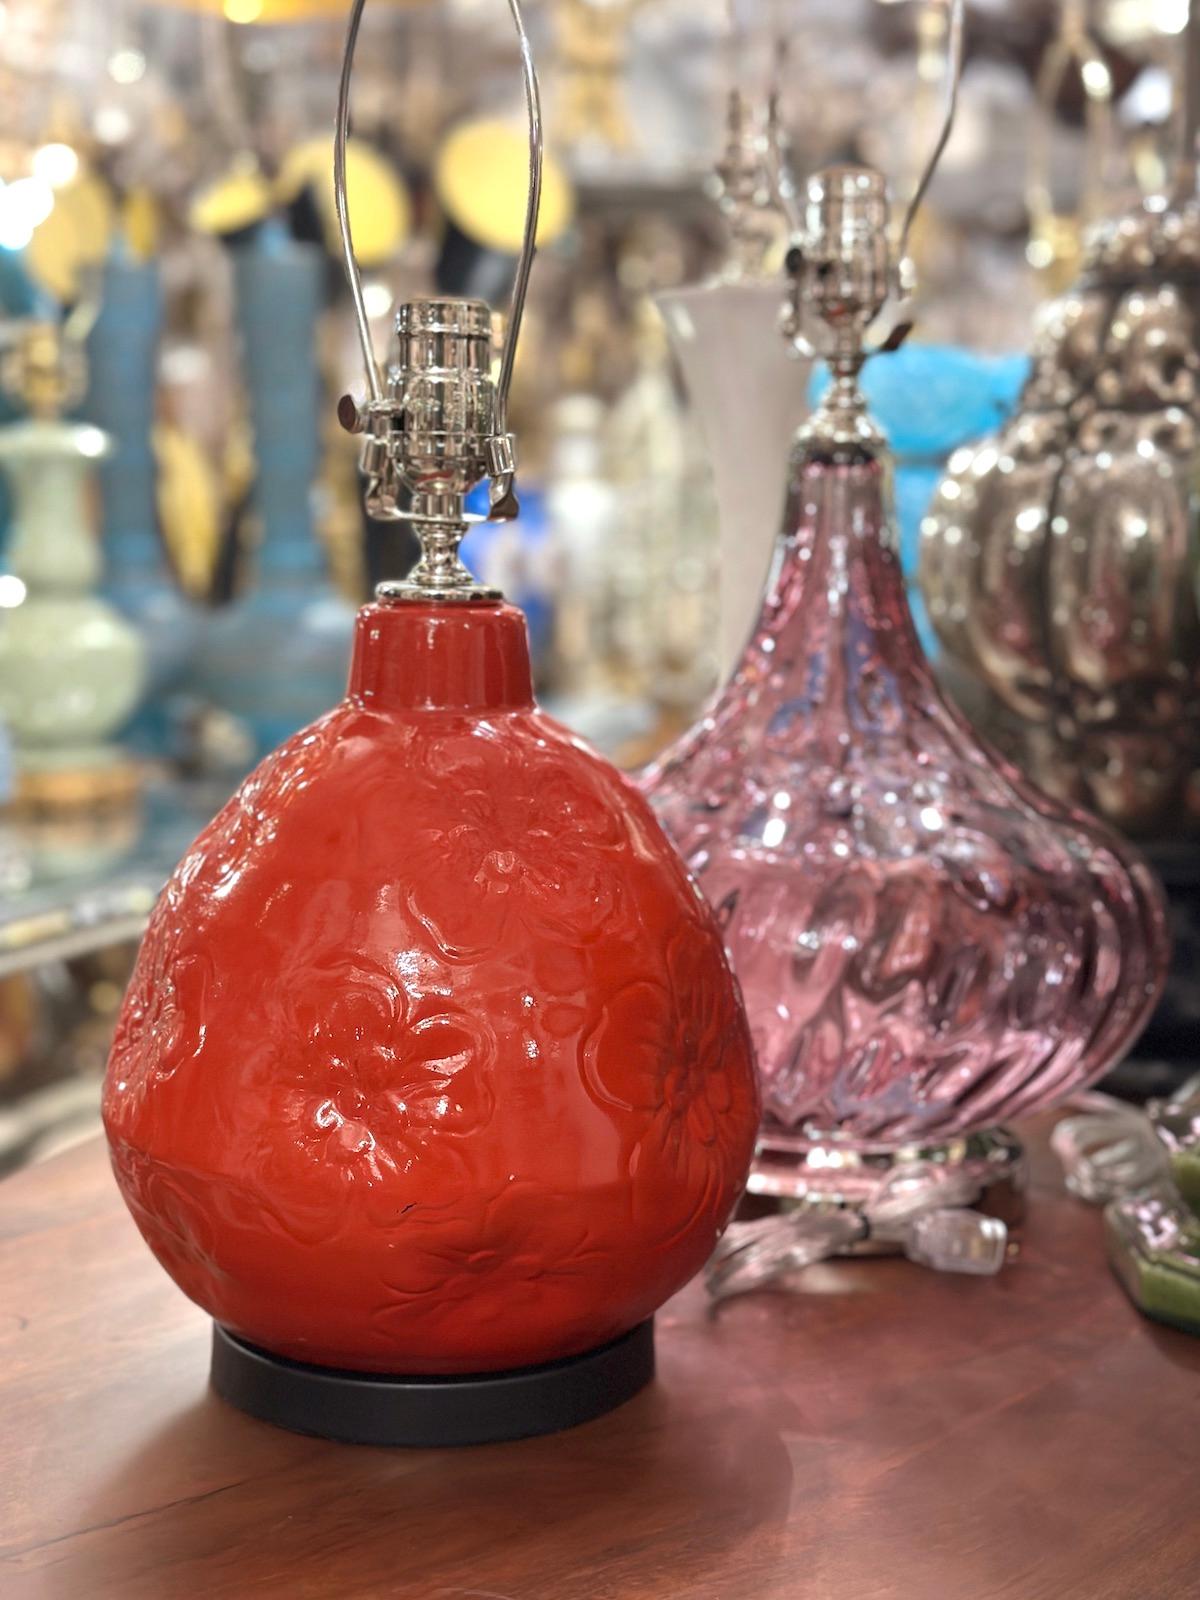 Lampe de table en porcelaine émaillée rouge à motif floral, datant des années 1960.

Mesures :
Hauteur du corps : 11